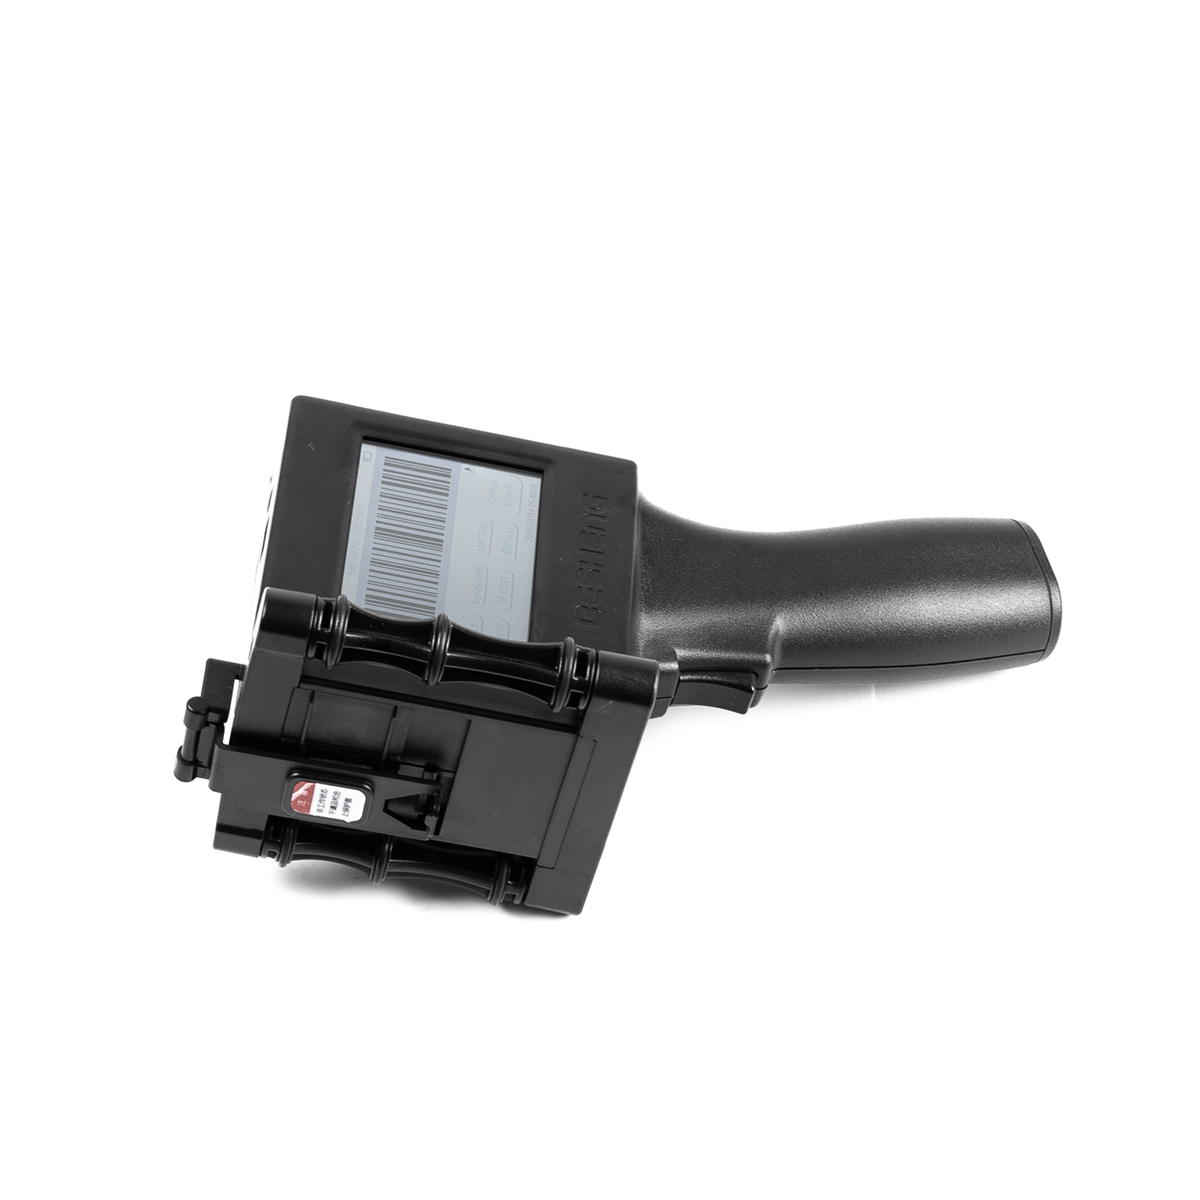 Ruční inkoustová tiskárna T-1000 600DPI s výškou znaků 12,7mm